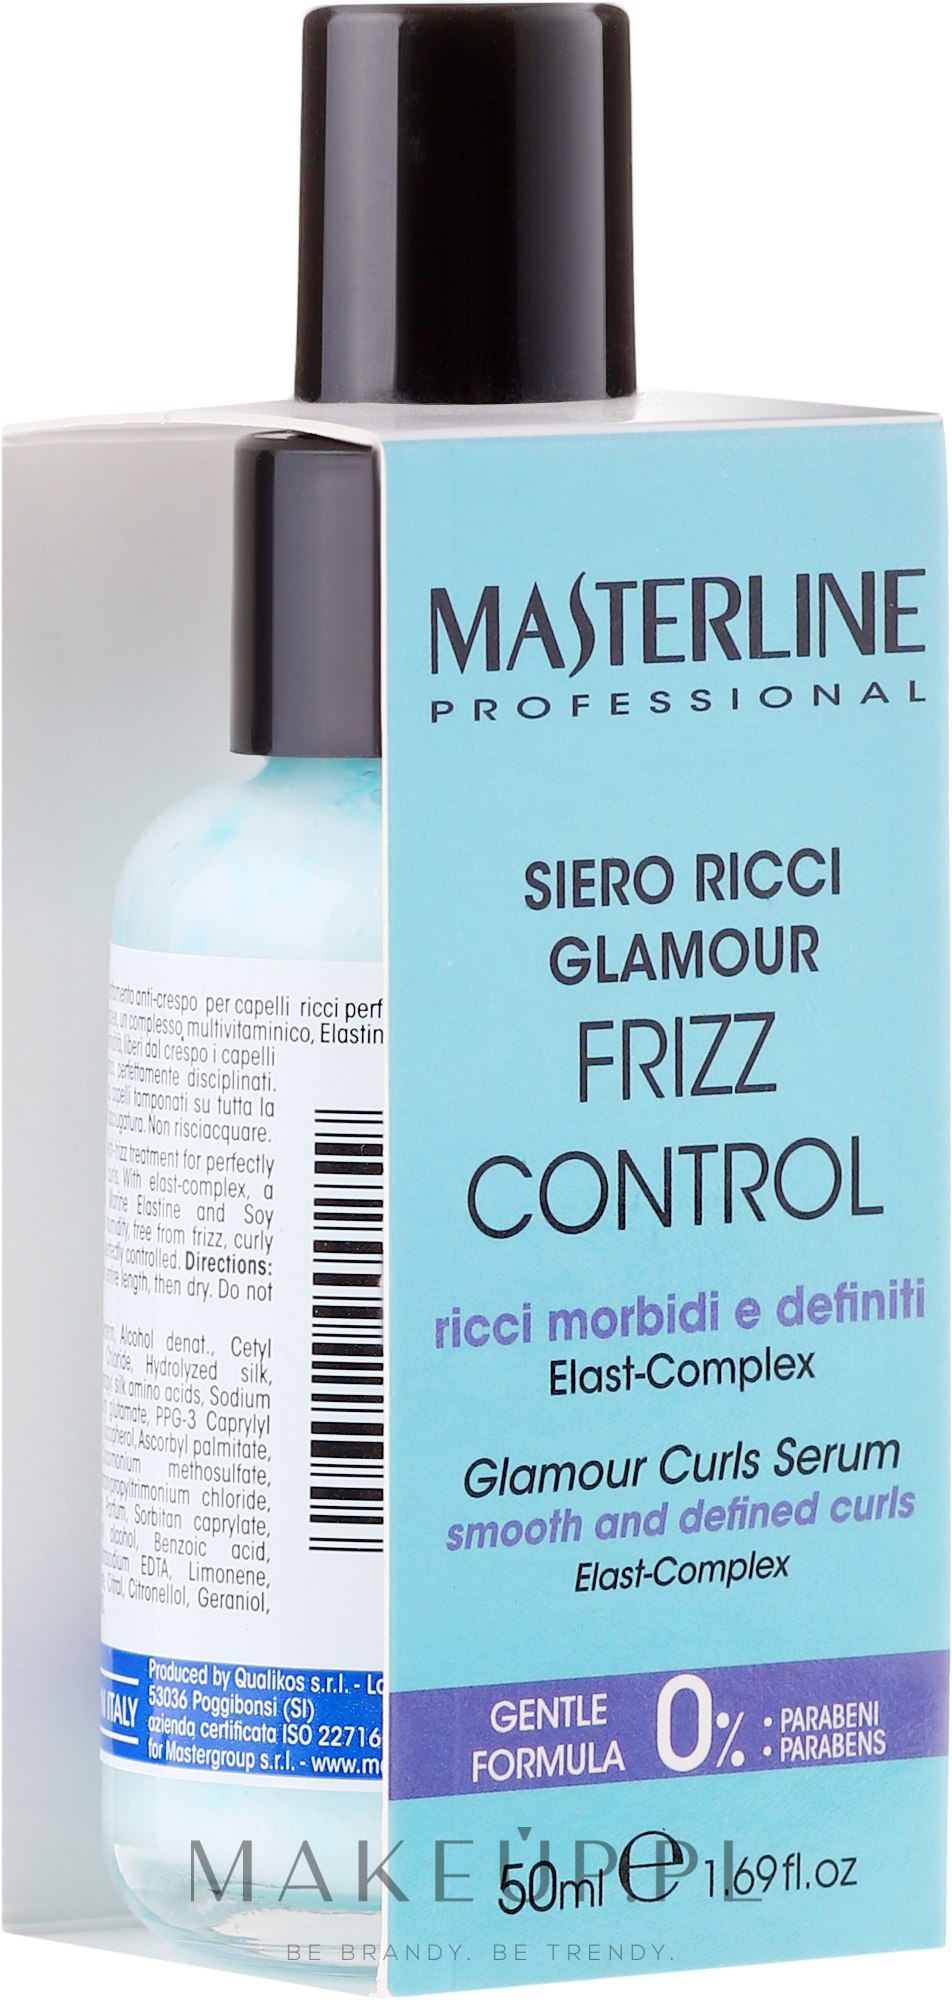 masterline frizz control szampon opinie